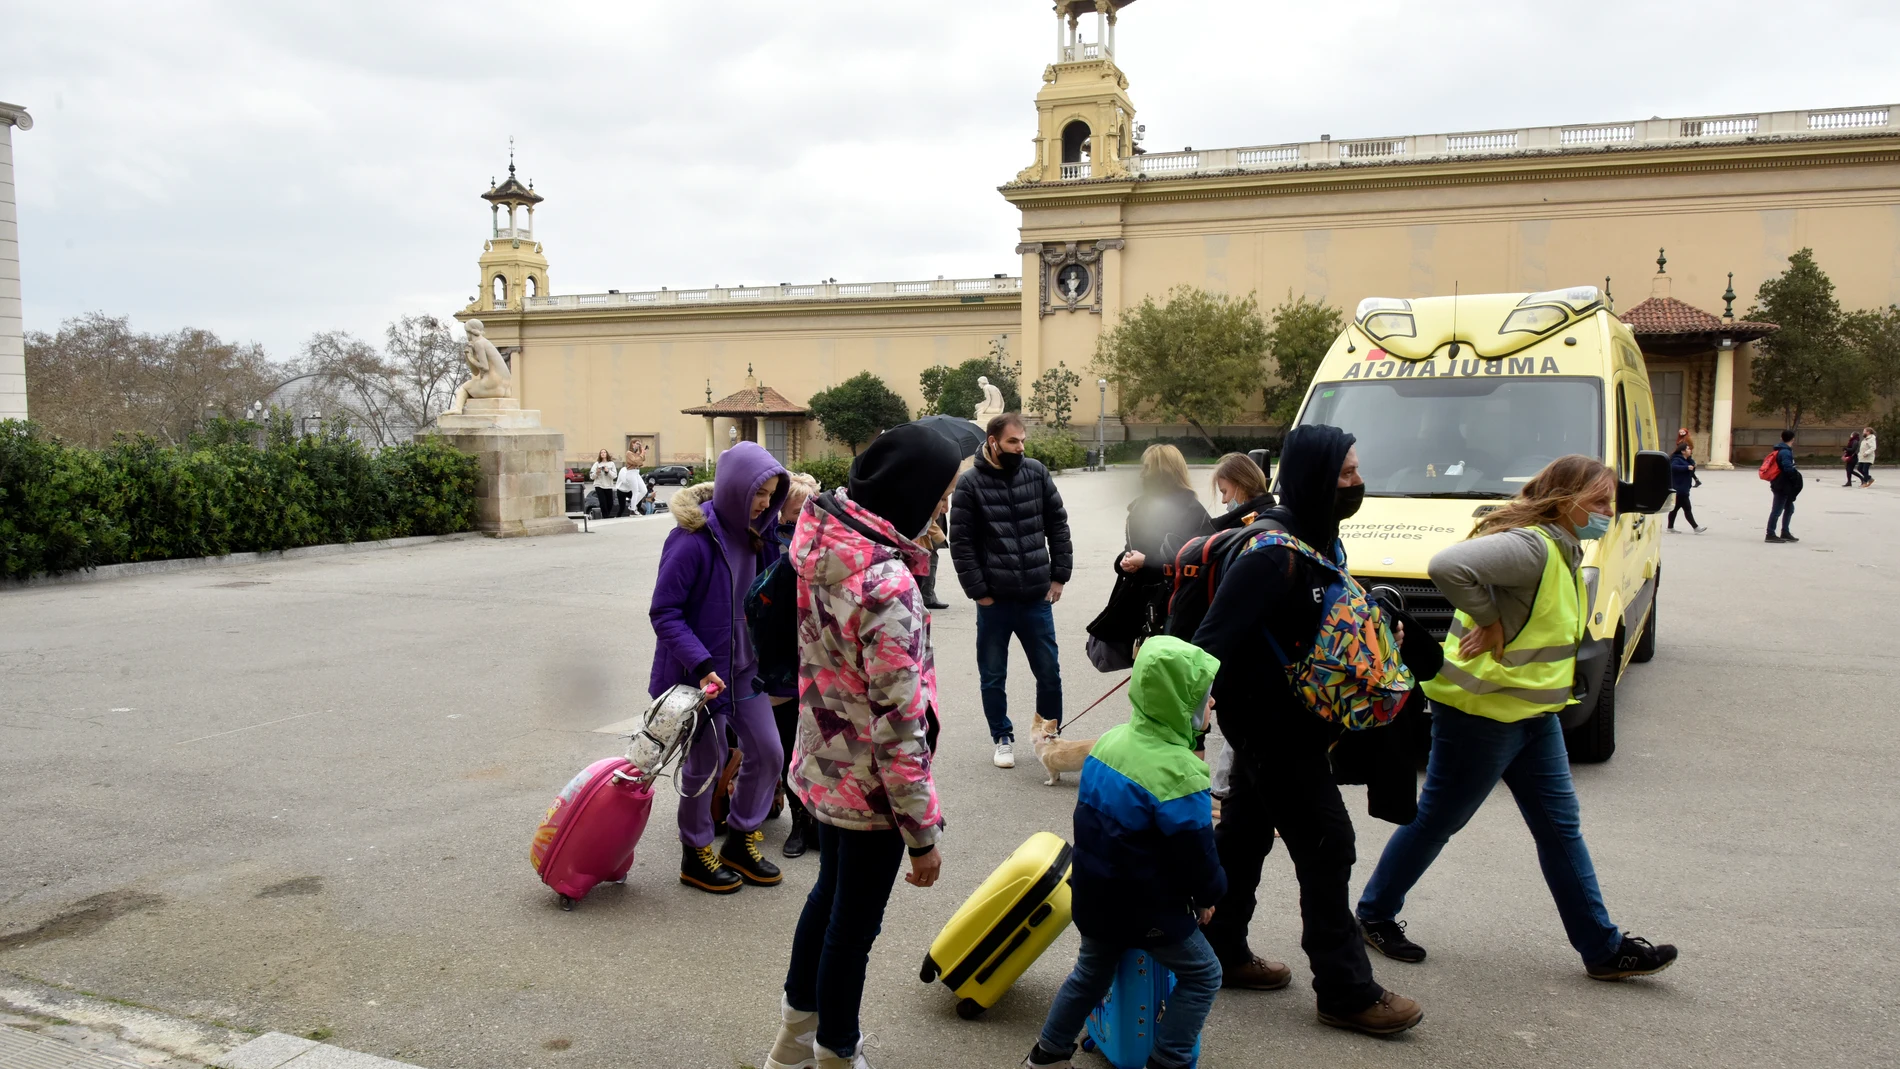 Varios refugiados y una traductora, junto a una ambulancia, en la entrada del palacio de Victoria Eugenia, el palacio 7 de Fira de Barcelona, convertido en un centro de recepción y atención de refugiados de Ucrania, a 18 de marzo de 2022, en Barcelona.